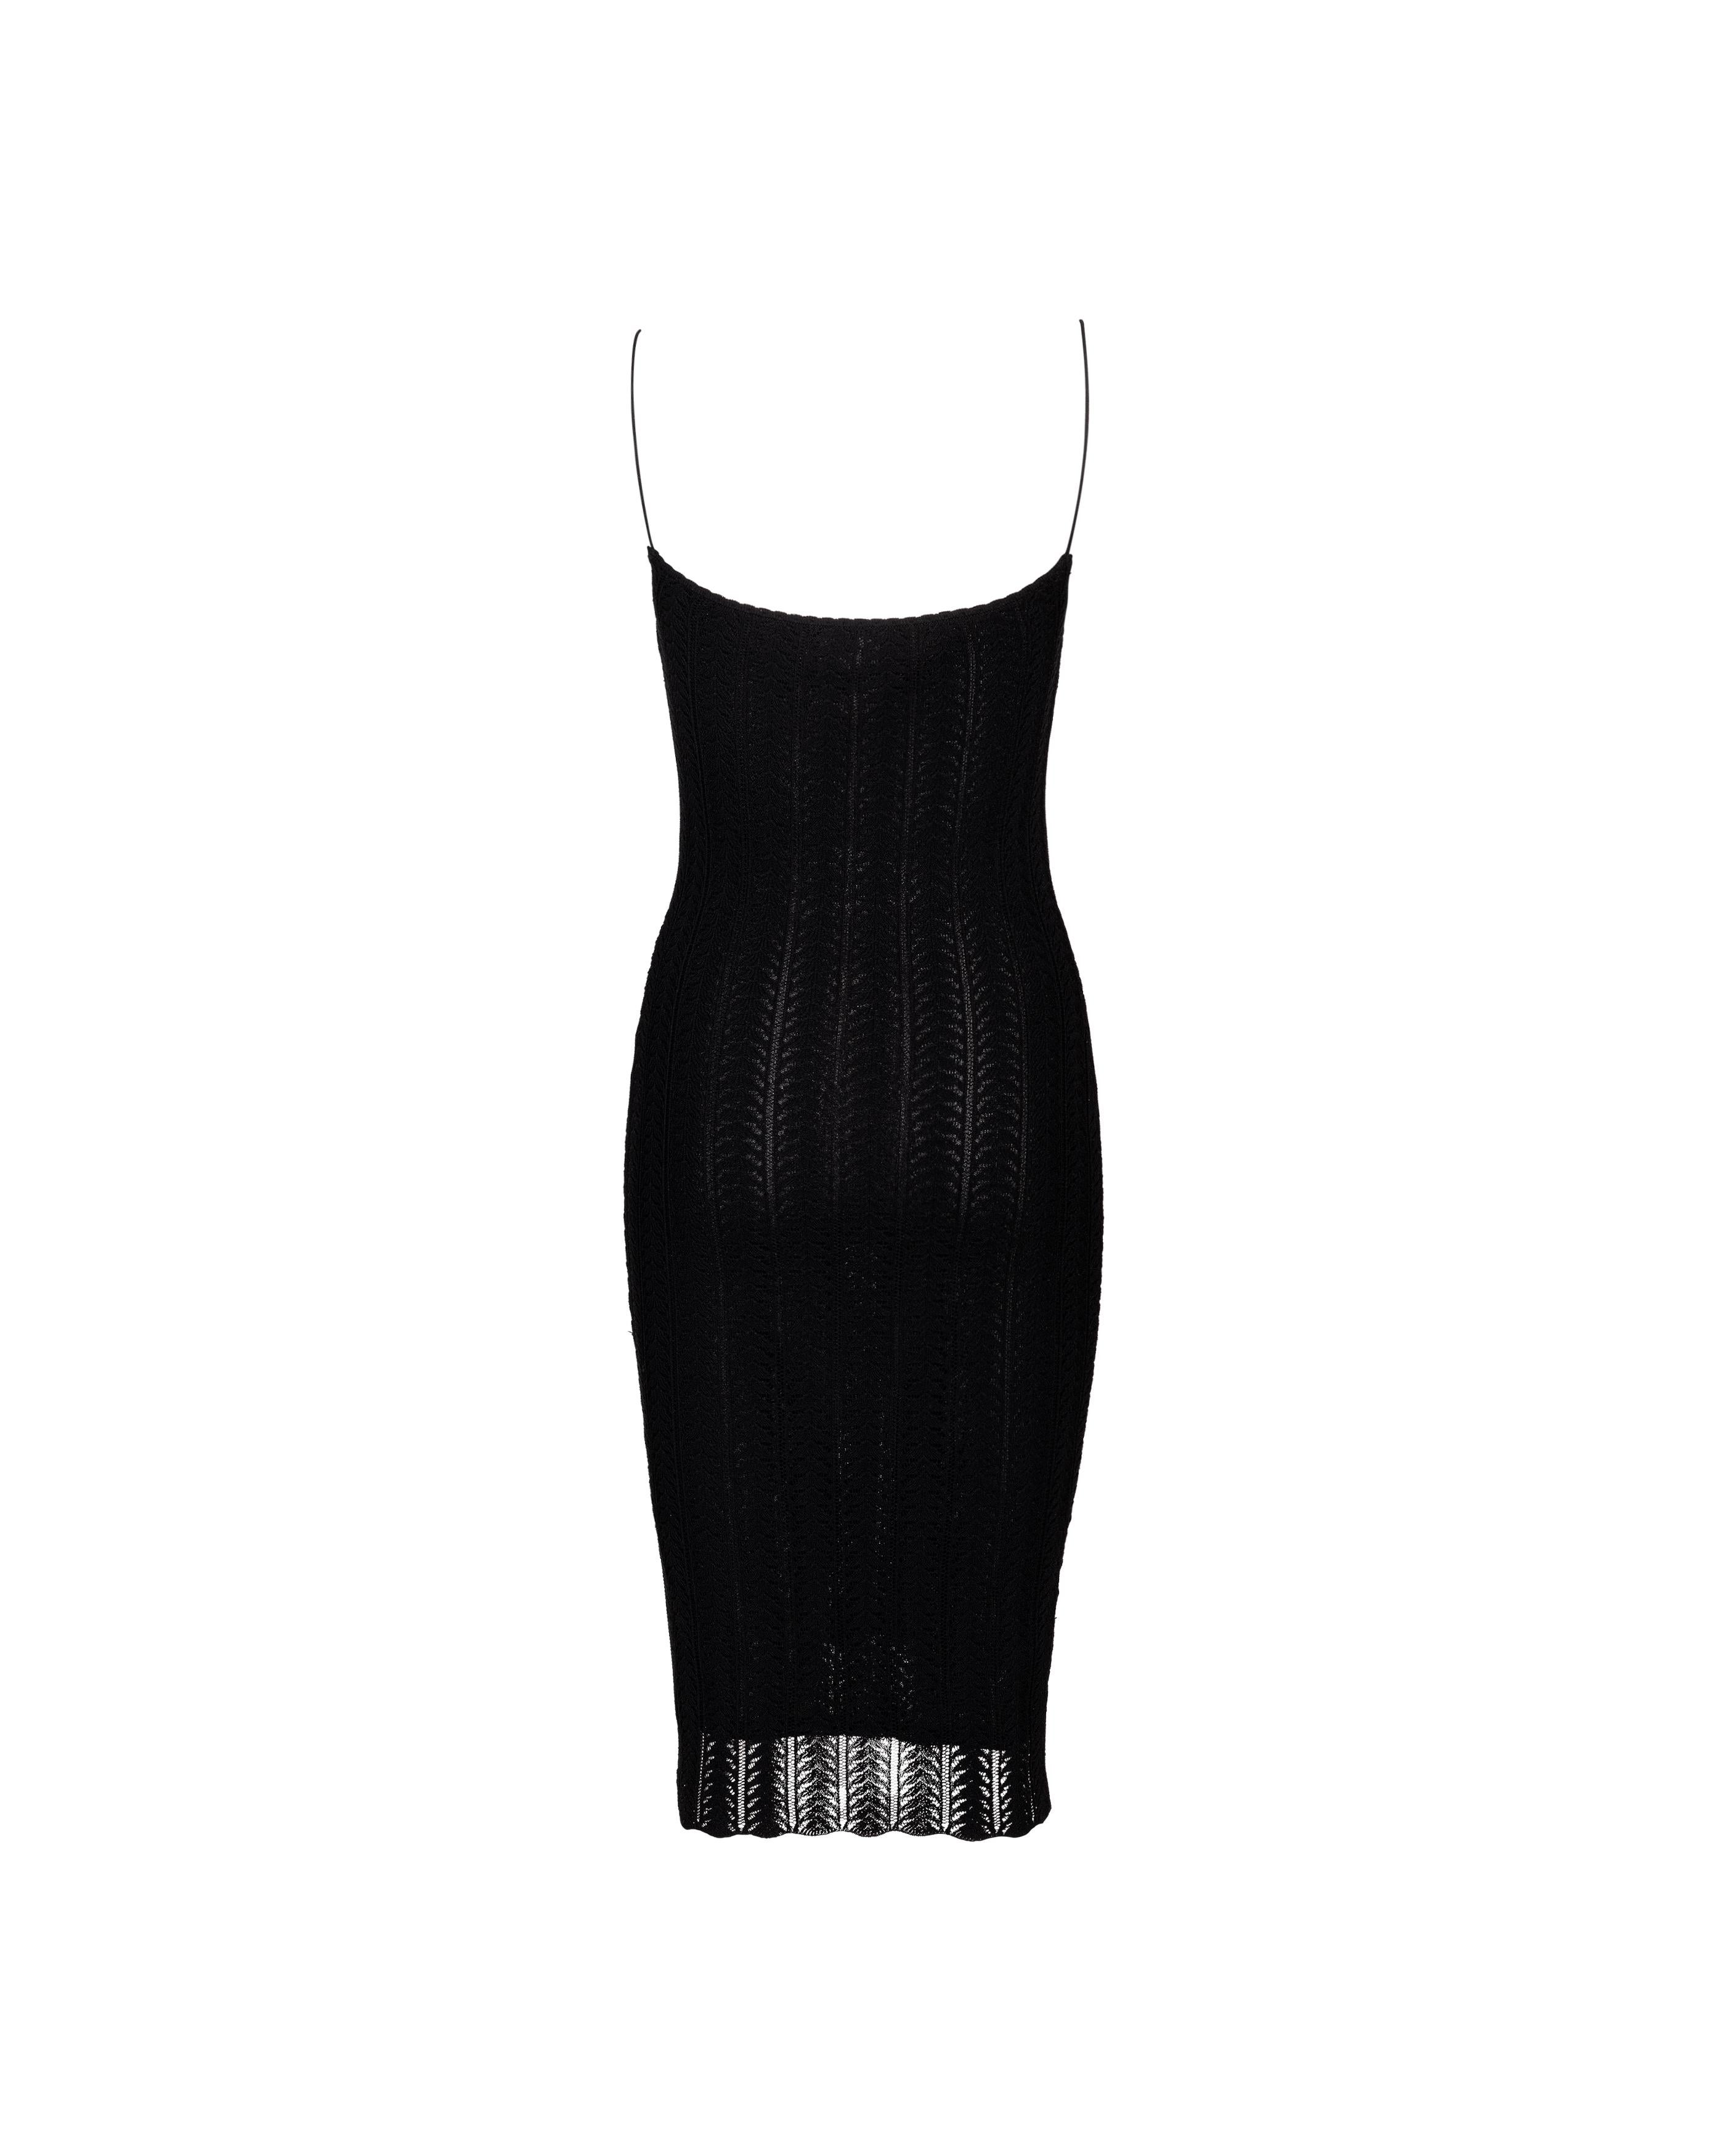 Women's Resort 2000 John Galliano Black Openwork Knit Knee-Length Slip Dress For Sale